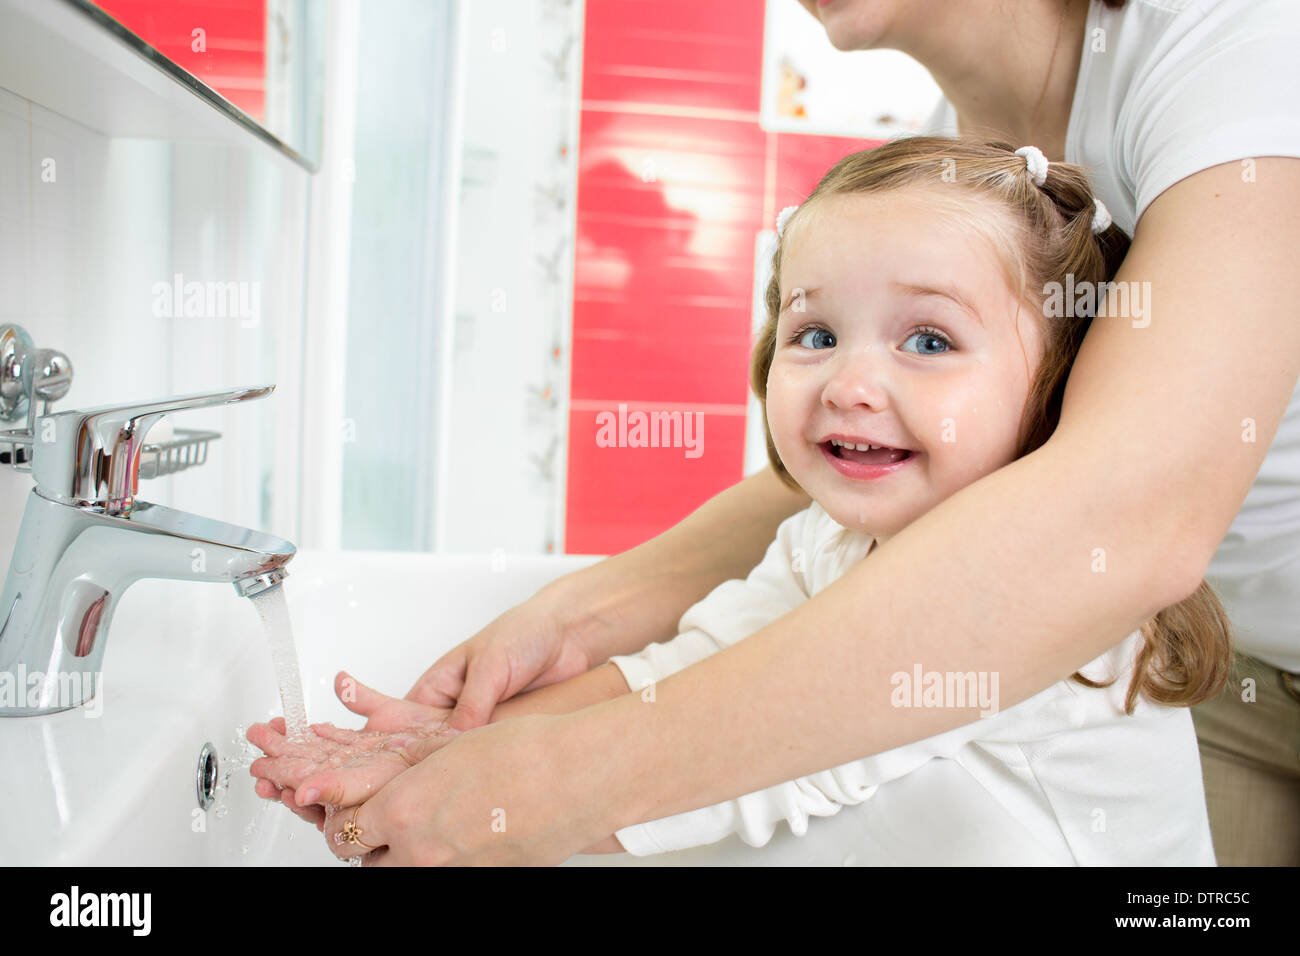 Kid washing hands in bathroom Stock Photo